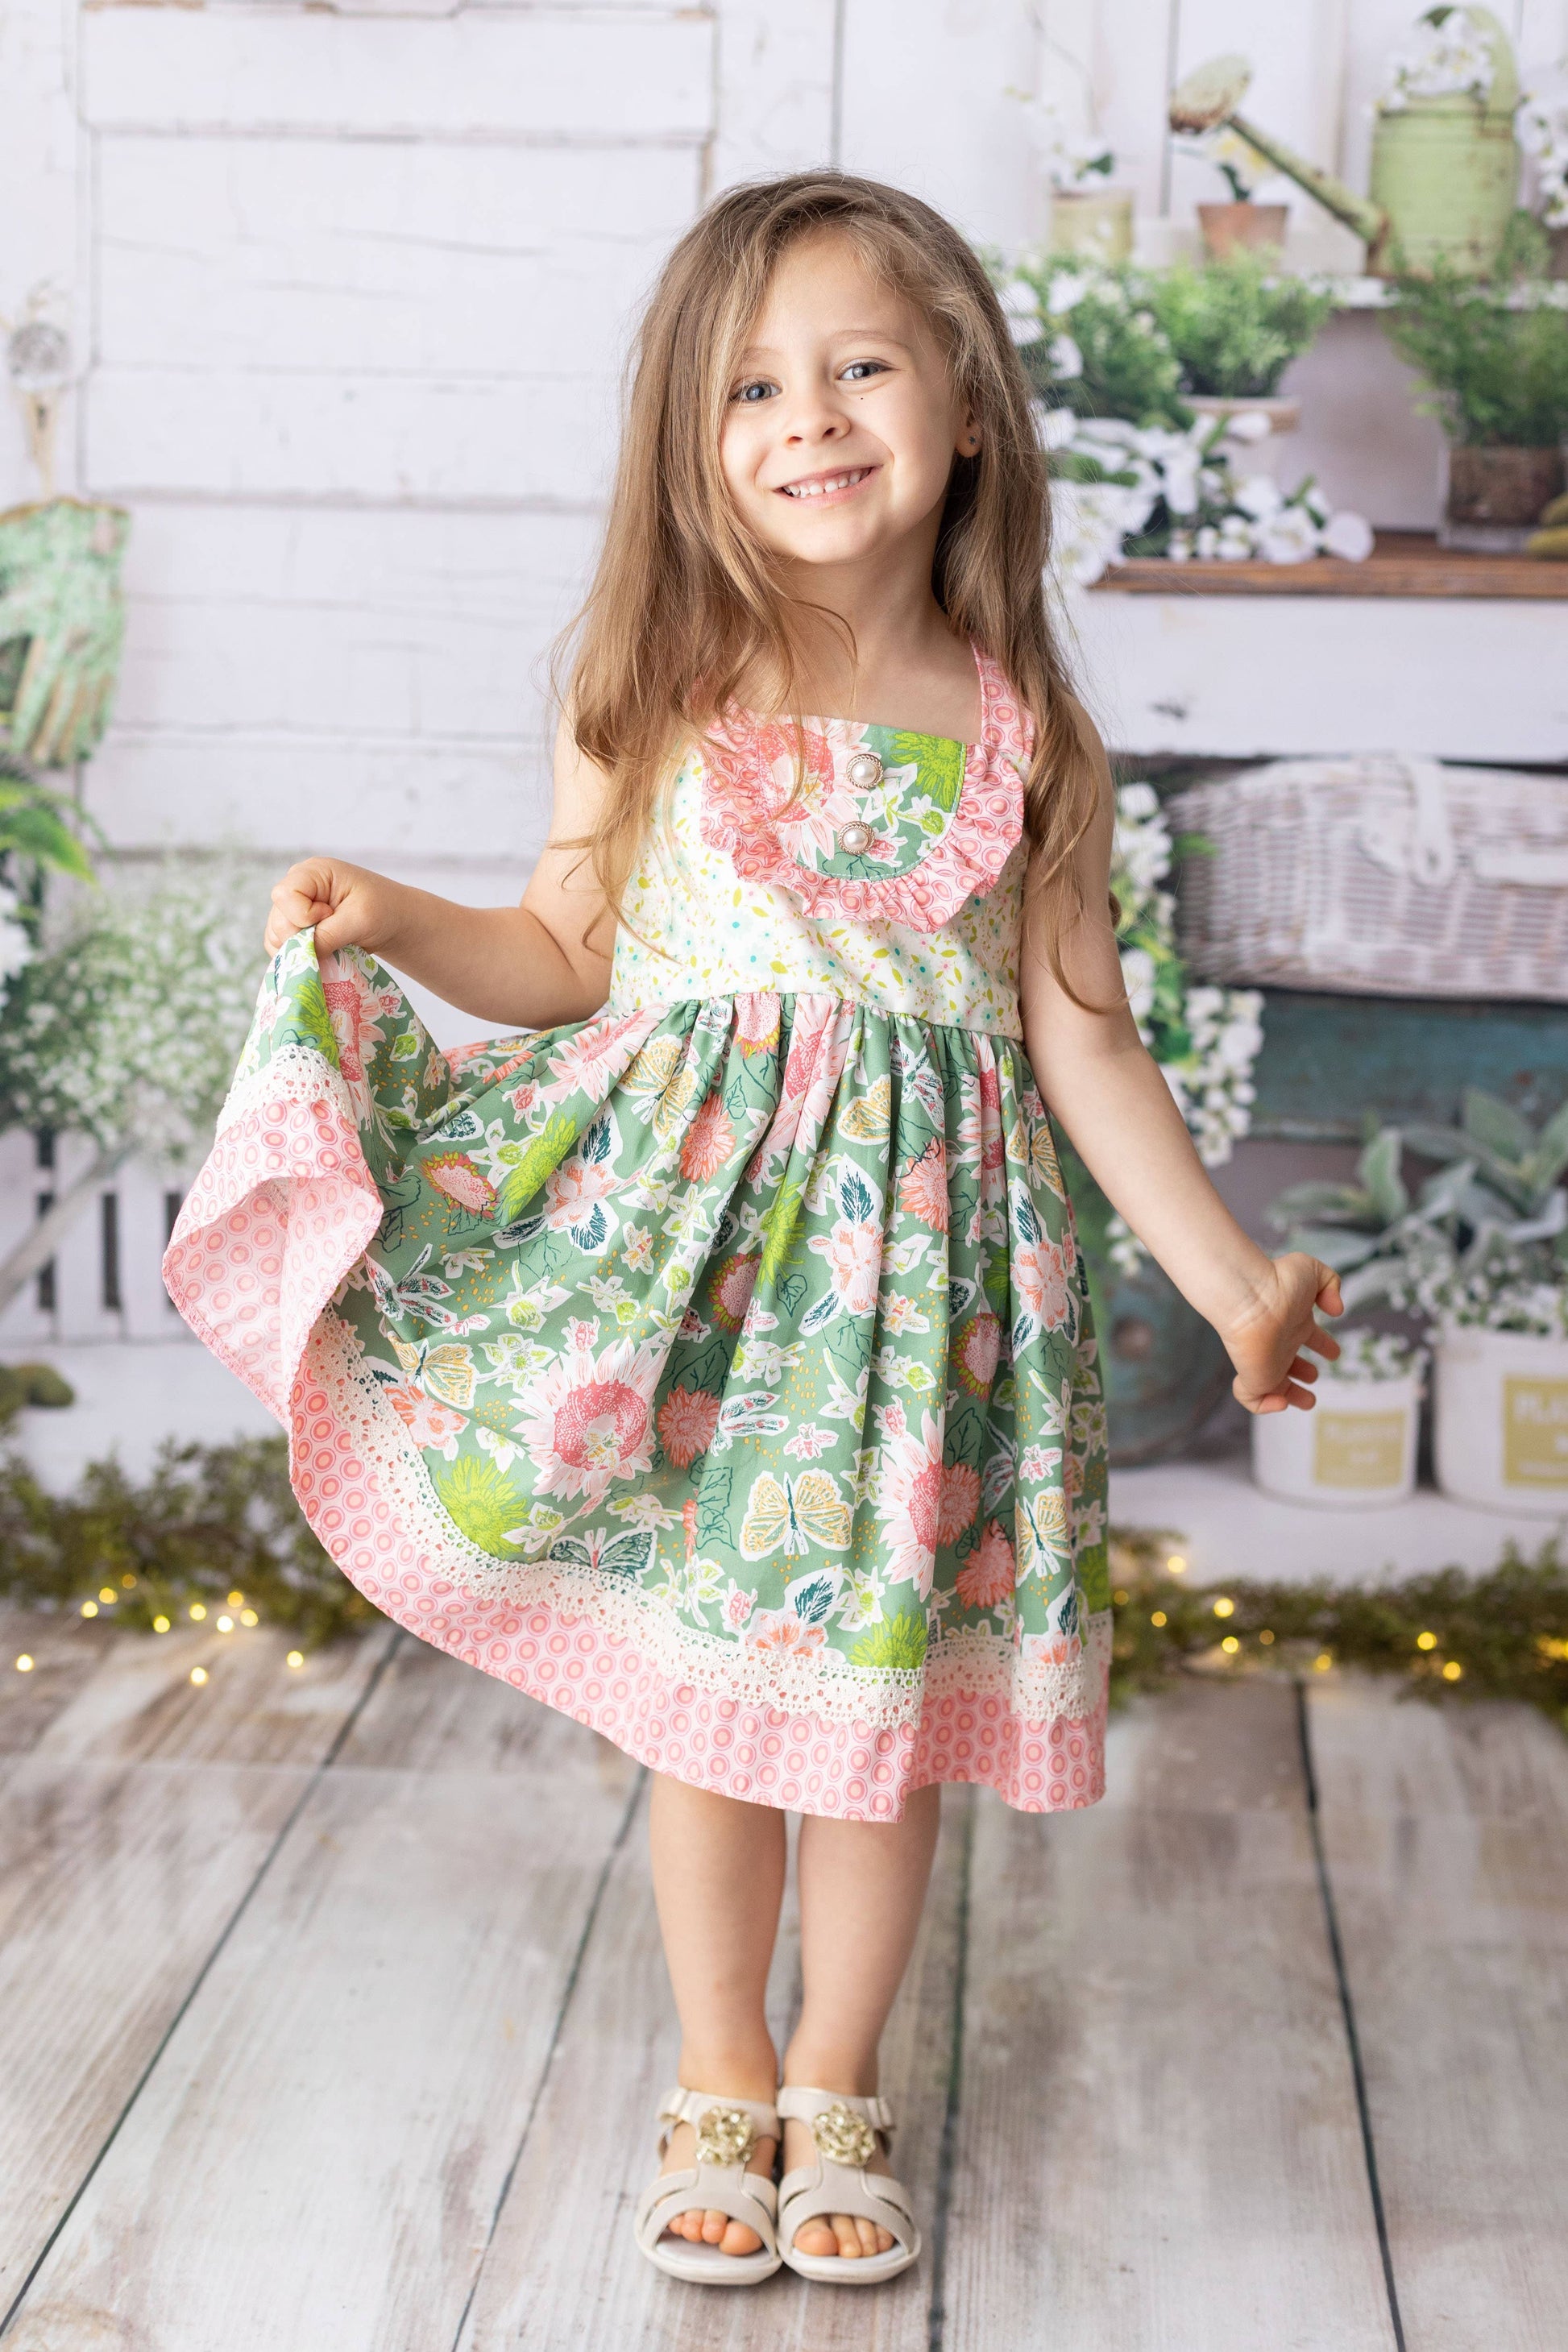 April Meadow Dress  - Doodlebug's Children's Boutique